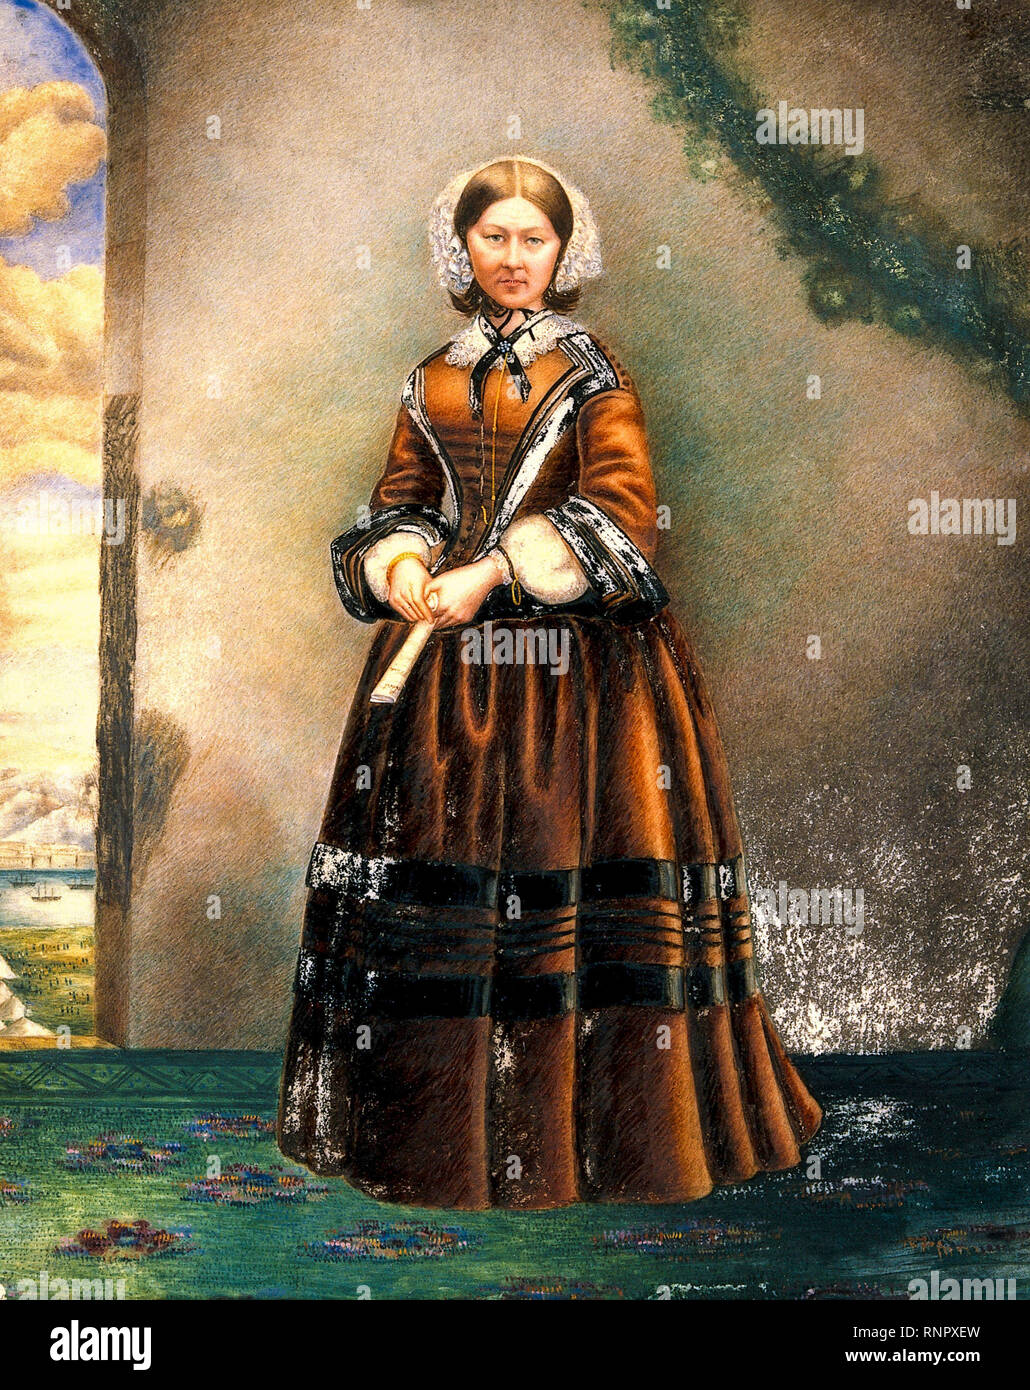 Florence Nightingale (1820-1910), reformador social inglés, estadístico y fundador de la enfermería moderna, pintura retrato, siglo 19th Foto de stock